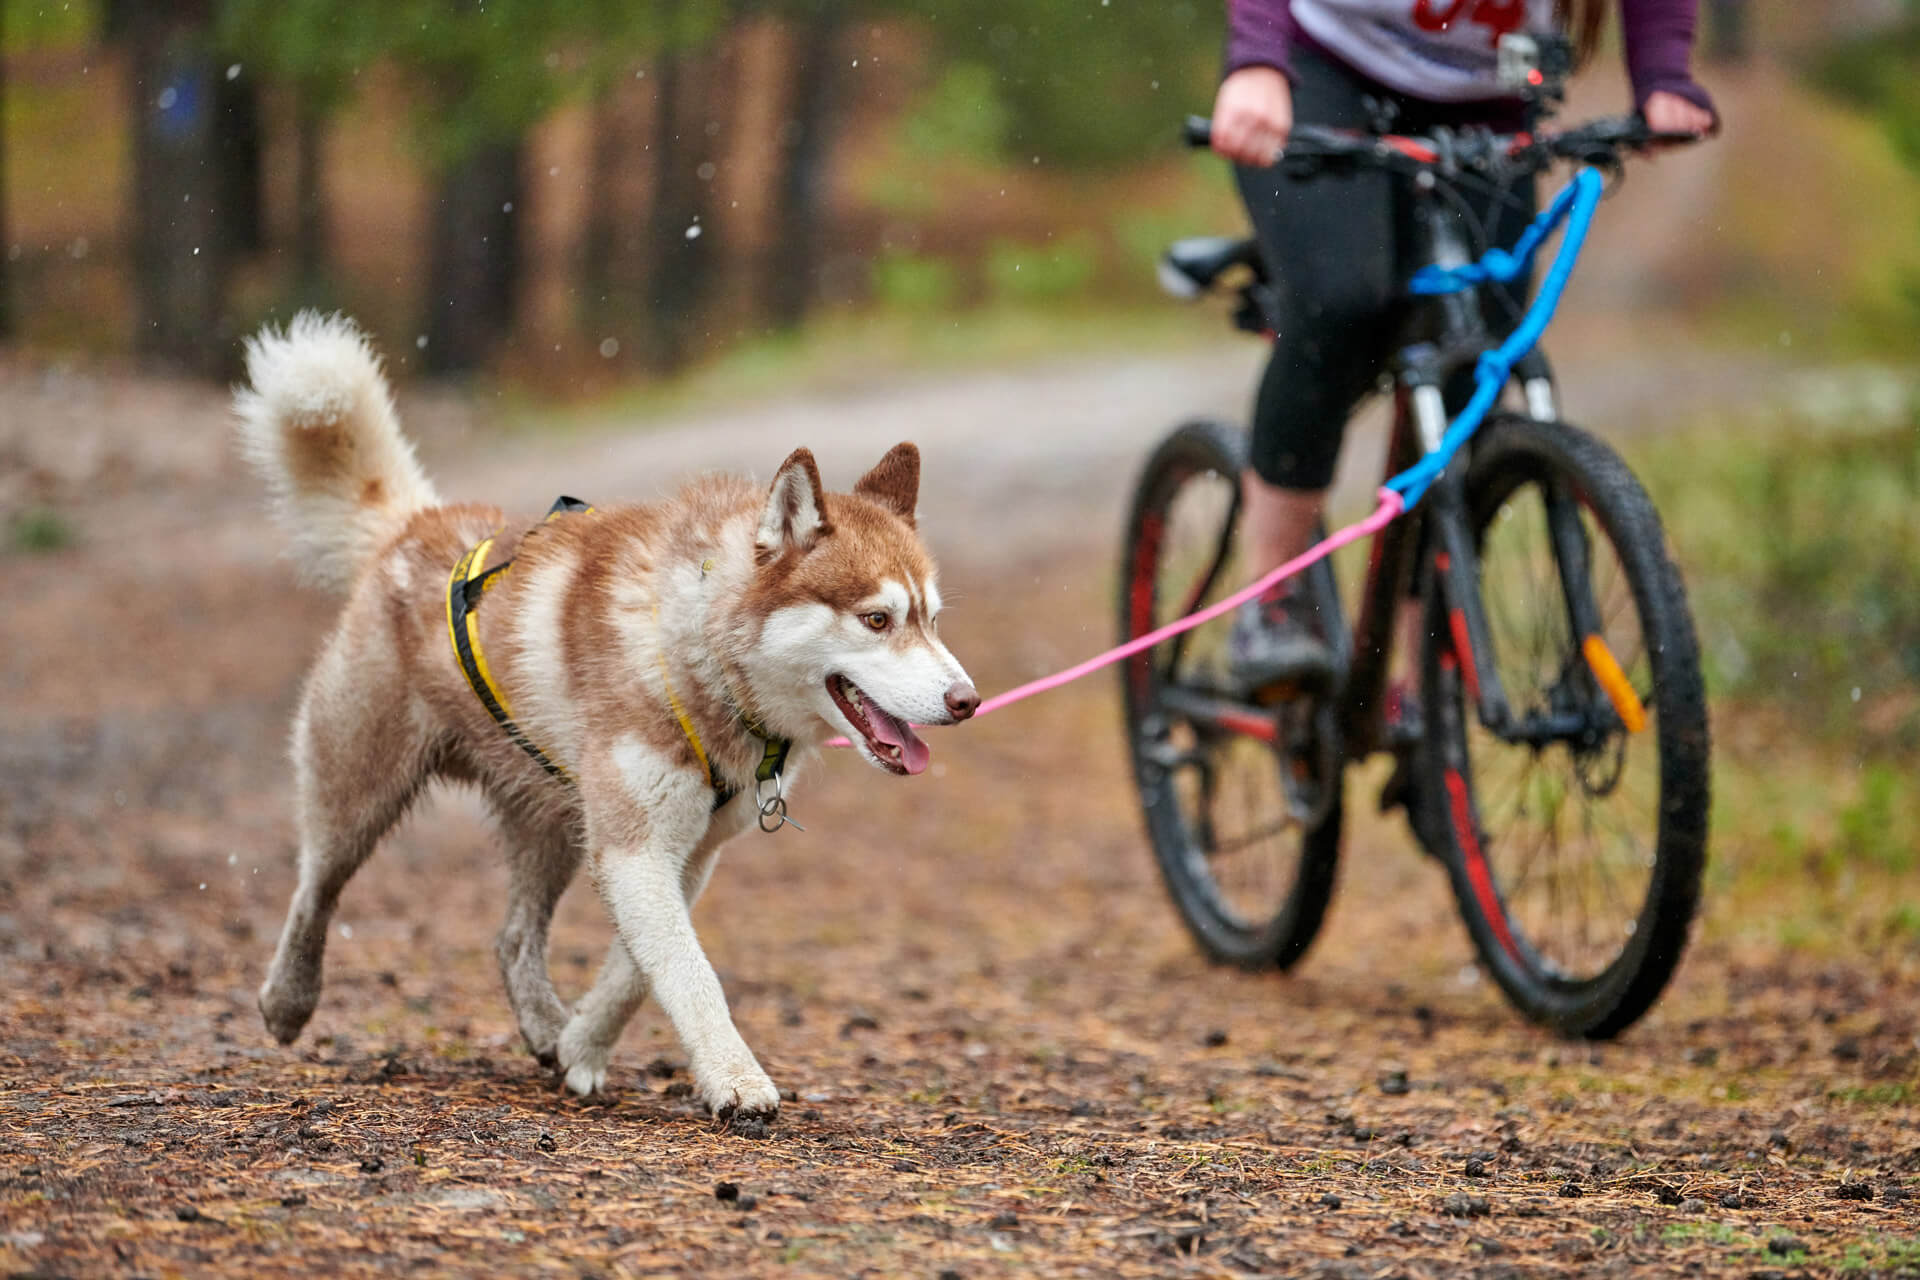 Perro marrón y blanco con arnés y correa corriendo junto a una persona en bici 